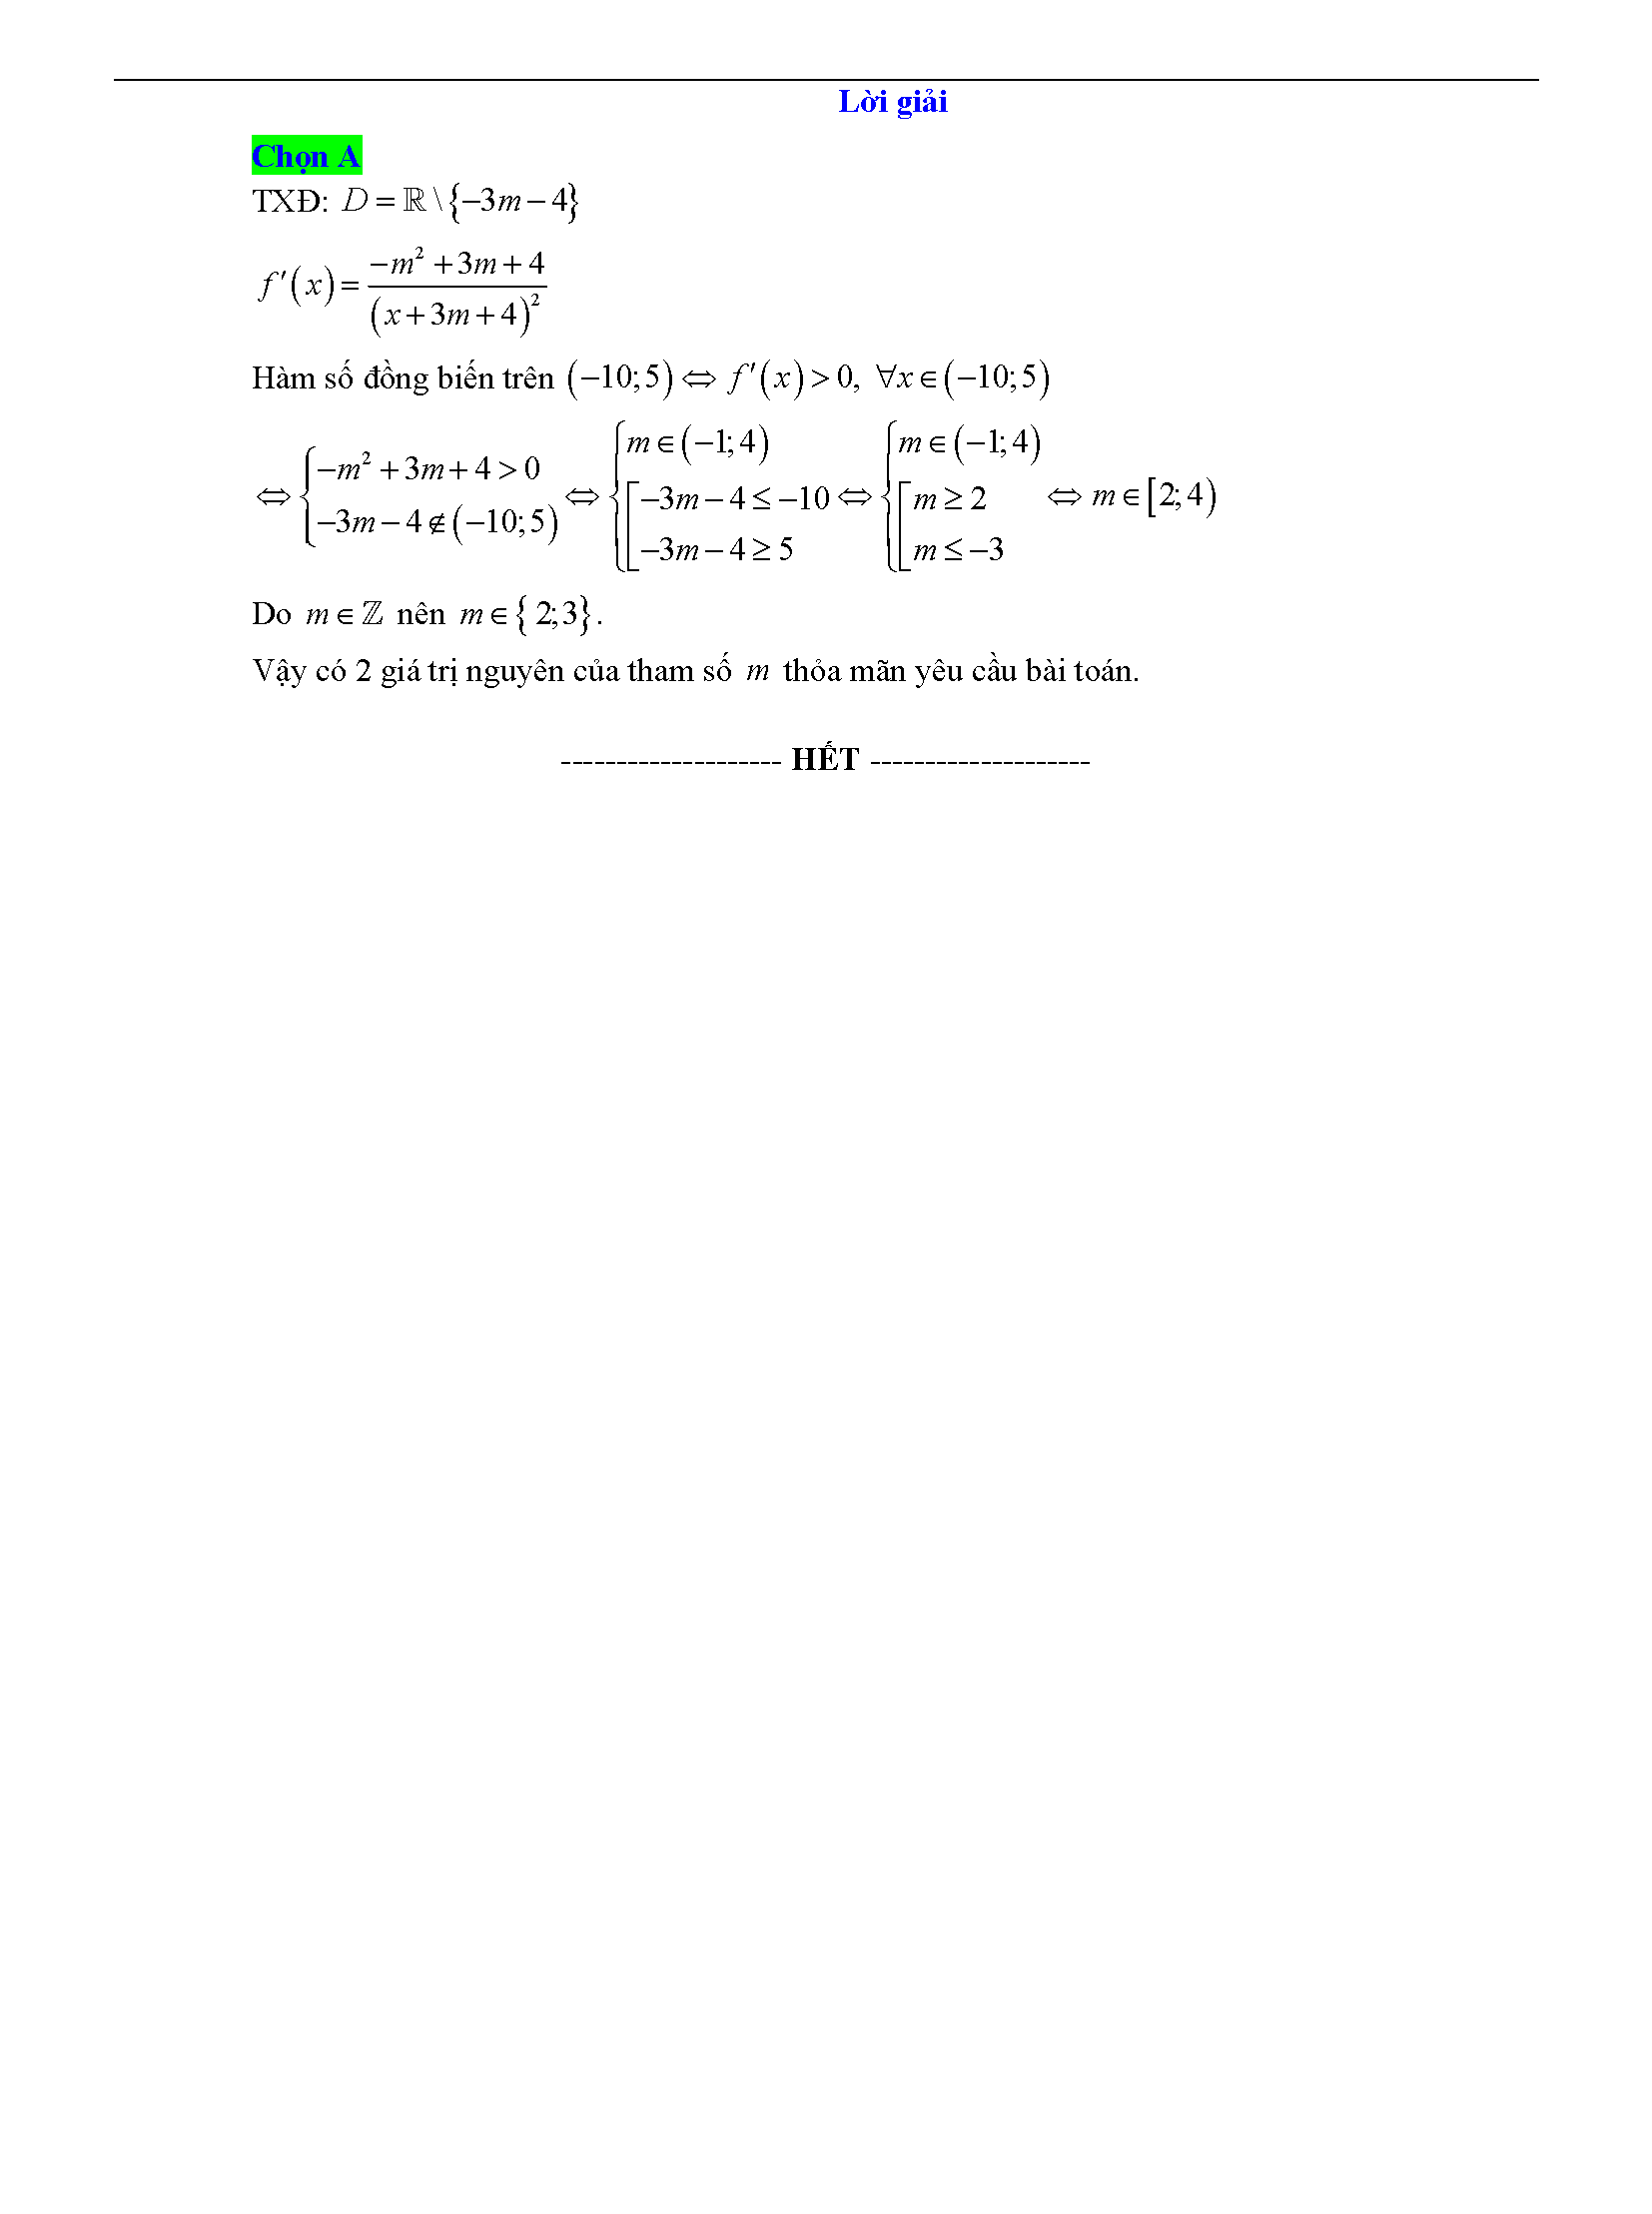 Trắc nghiệm tìm m để hàm số đơn điệu 28